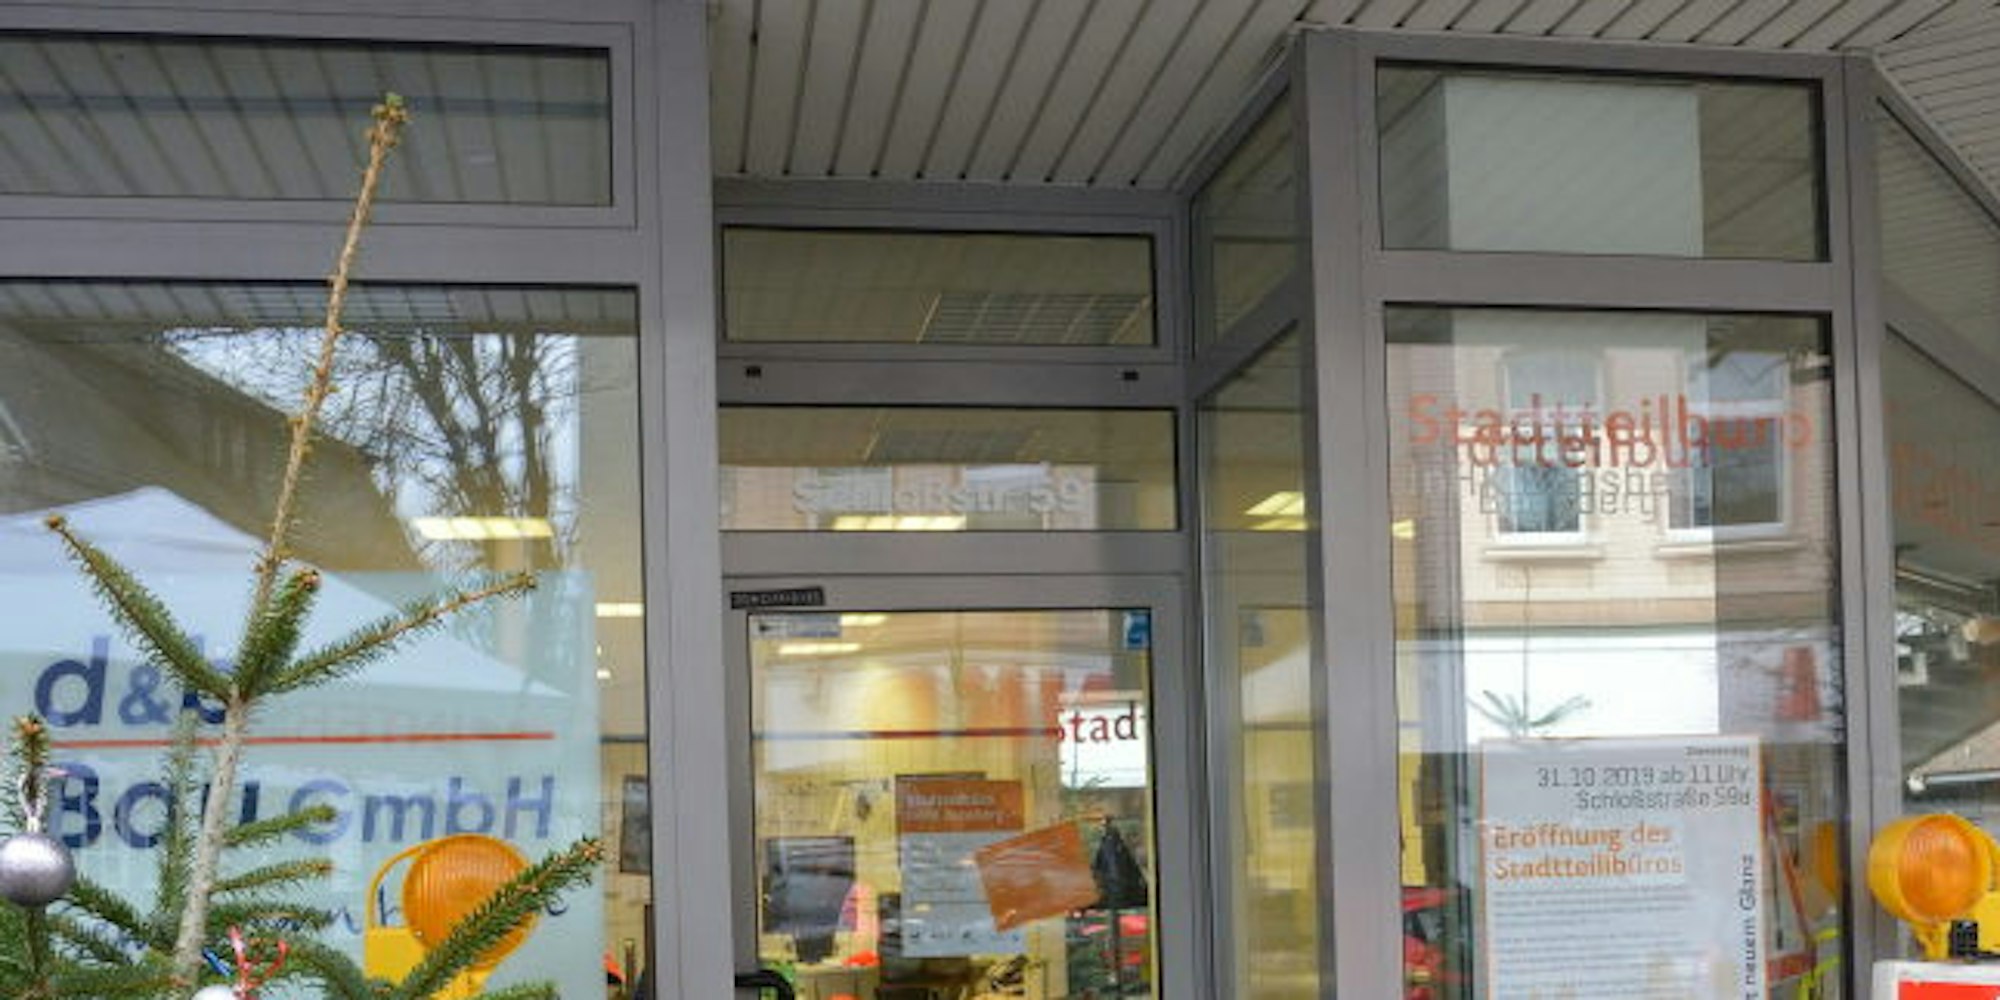 Im Ladenlokal an der Schloßstraße in Bensberg gibt es ein  mobiles Bürgerbüro der Stadt. Anders als das Bürgerbüro in der Stadtmitte kann es auch ohne Termin aufgesucht werden.